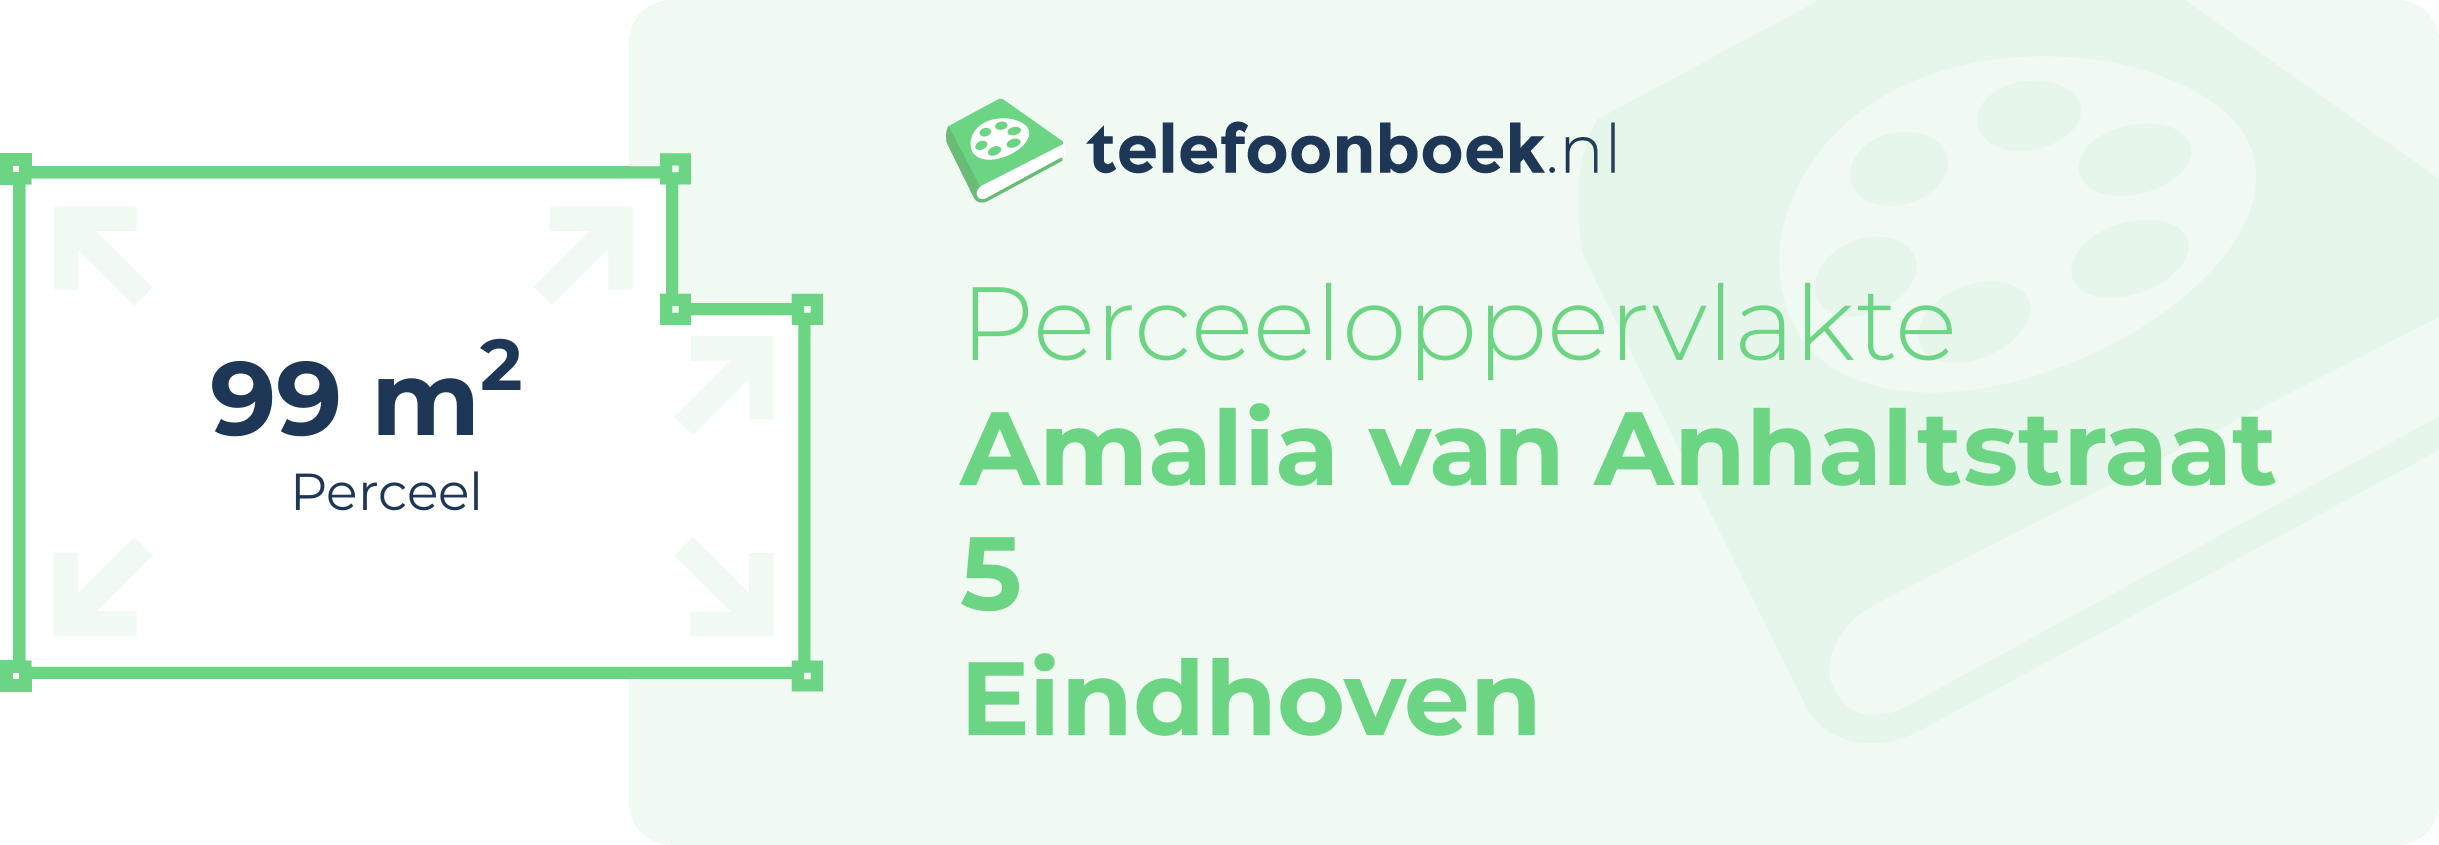 Perceeloppervlakte Amalia Van Anhaltstraat 5 Eindhoven